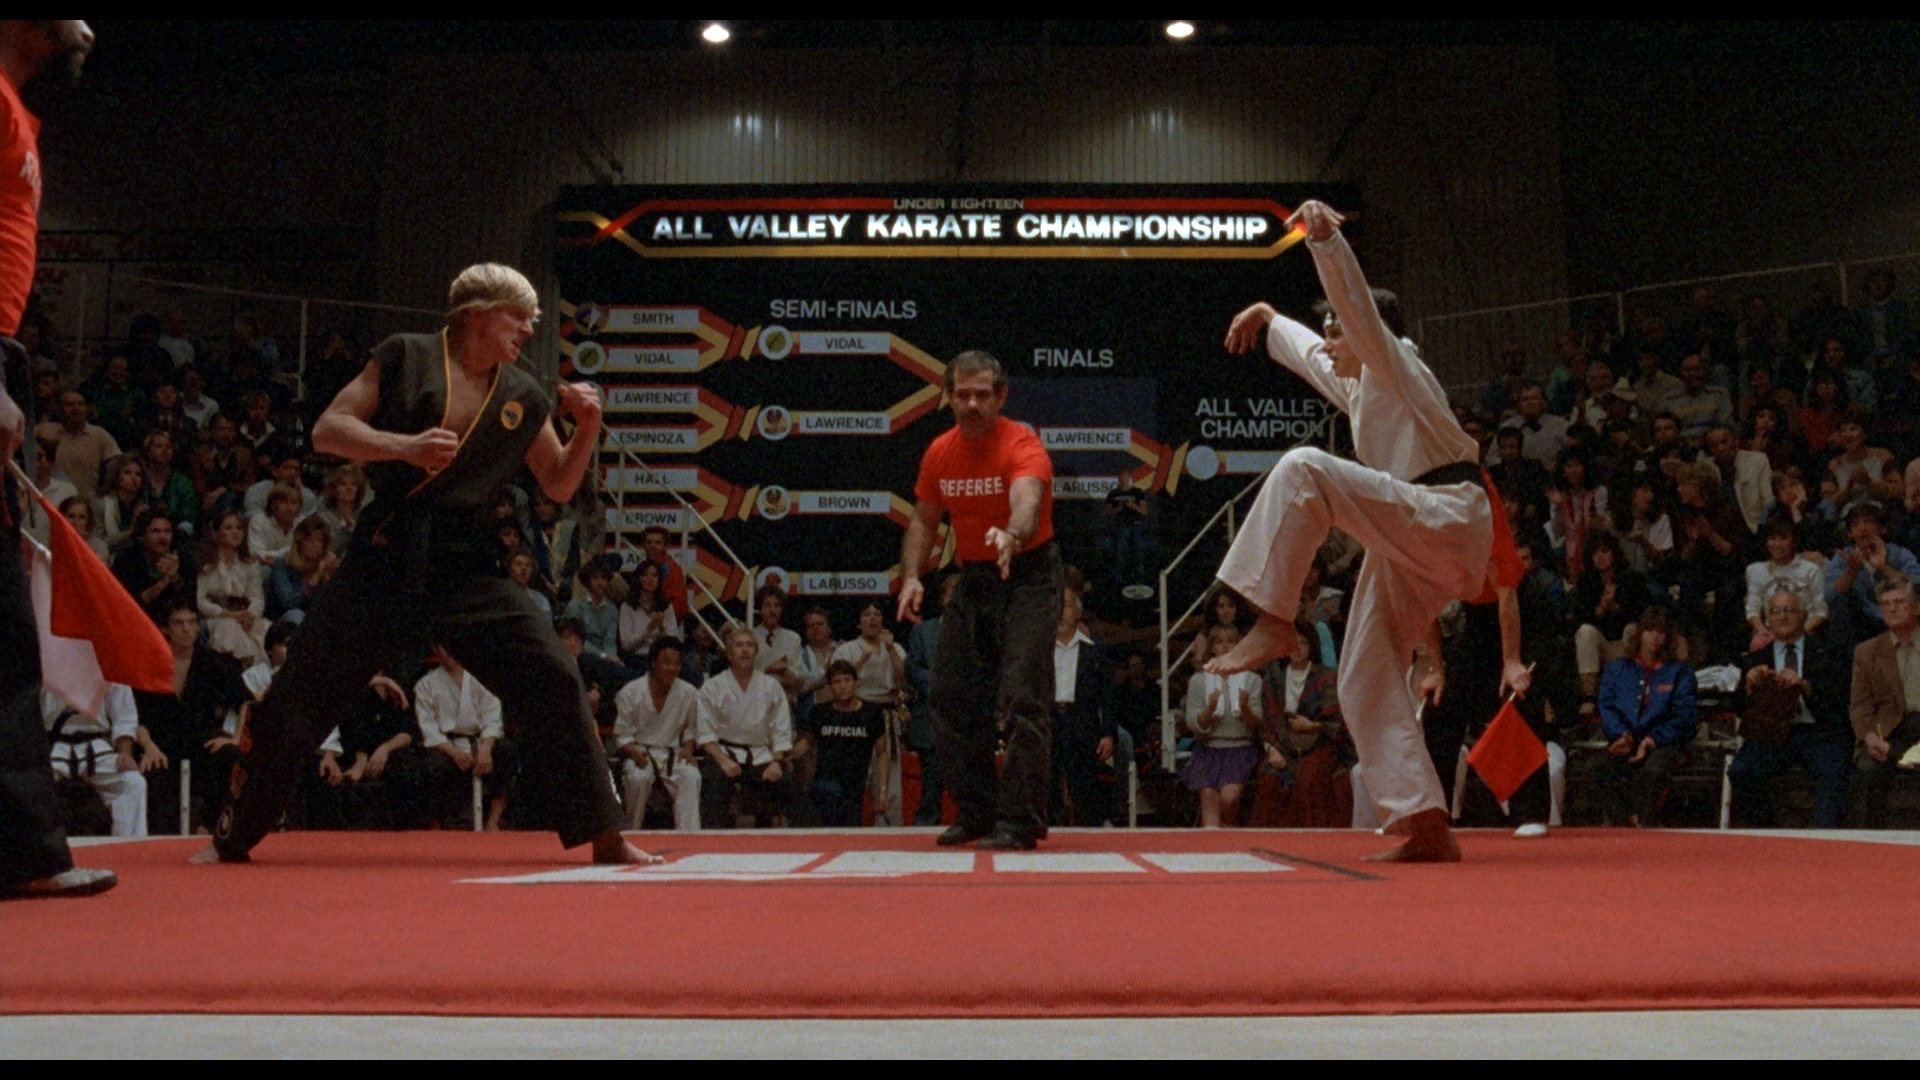 Comment la trilogie "Karate Kid" est-elle devenue culte ? - Cultea